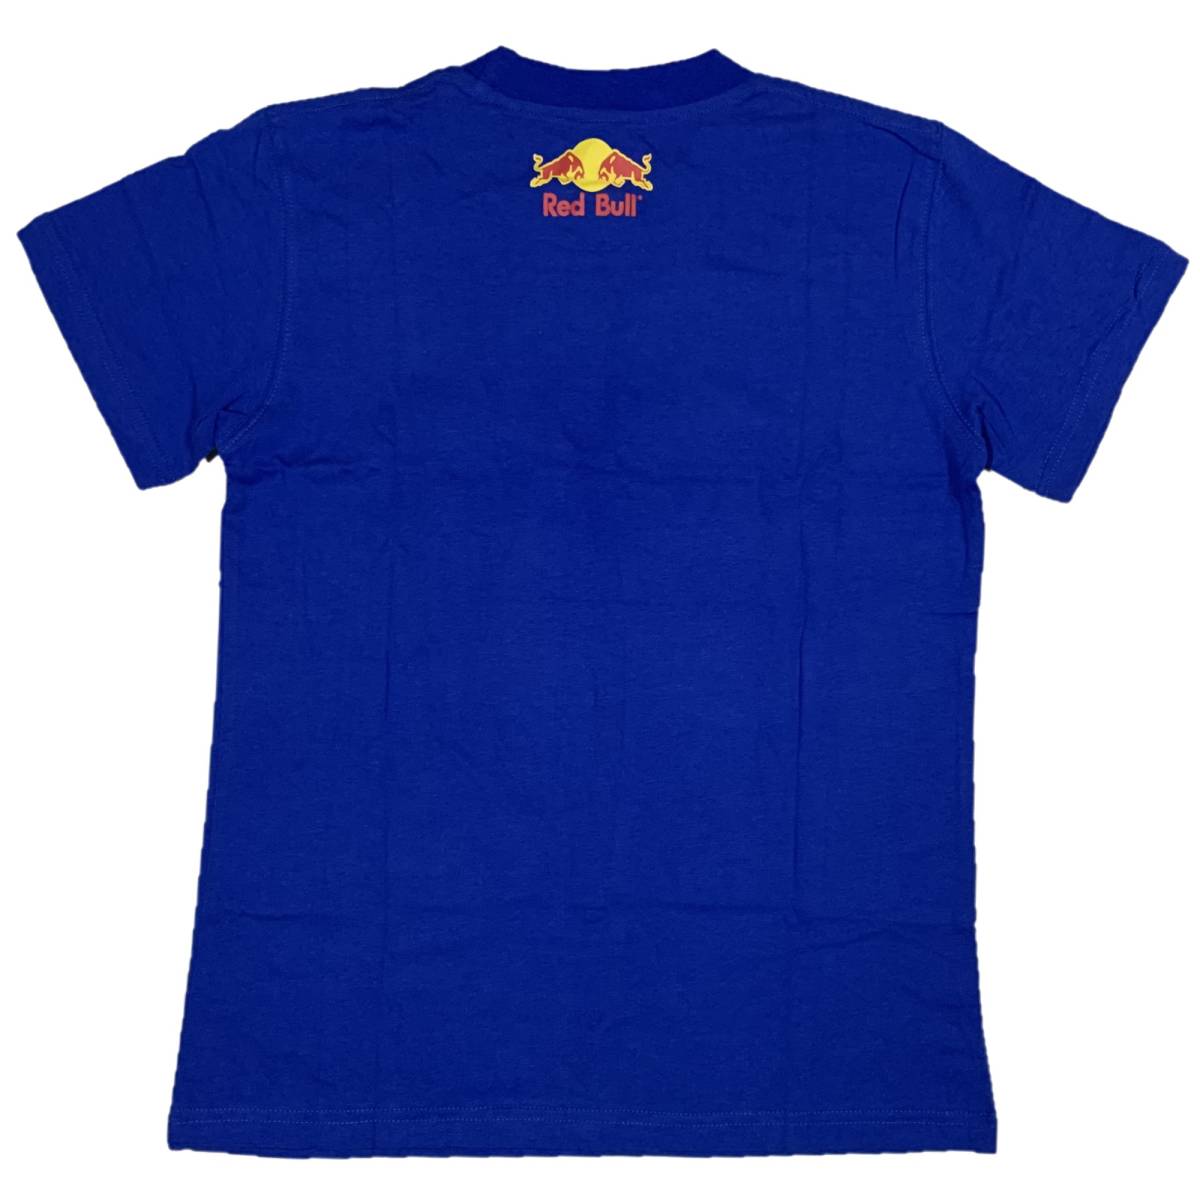 [並行輸入品] Red Bull レッドブル ブランドロゴ プリントTシャツ (ブルー) XXXL_画像2